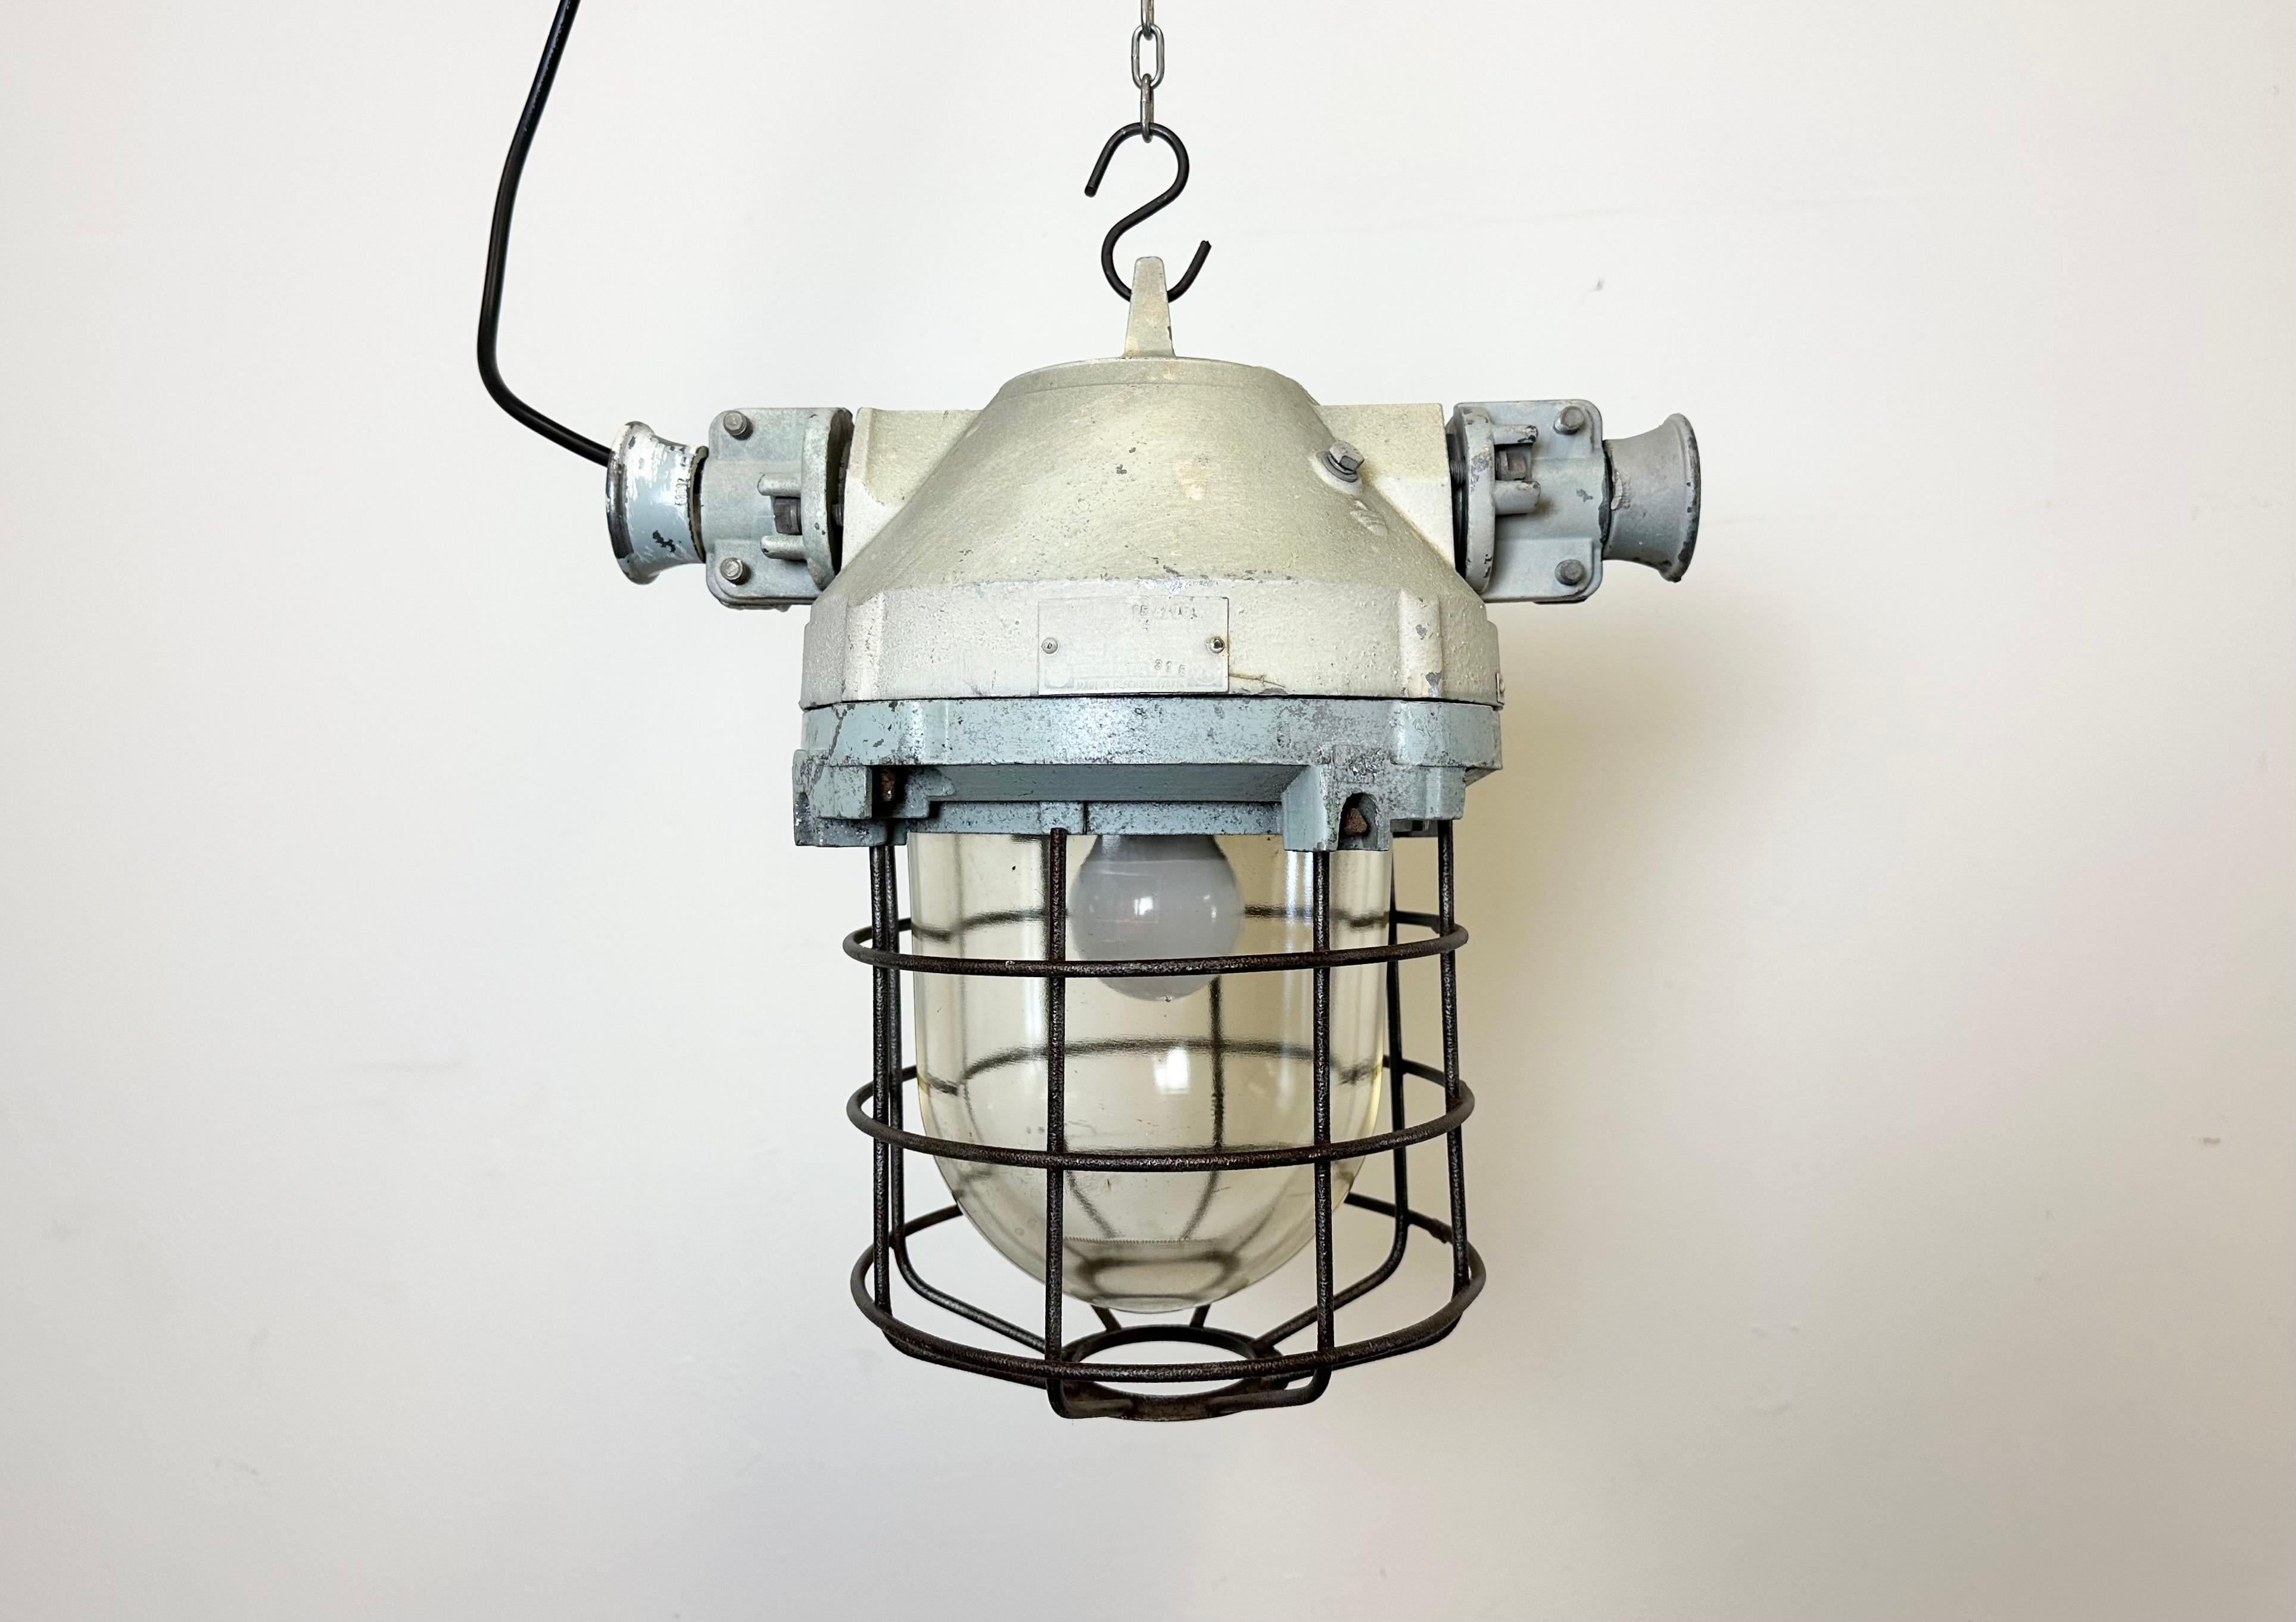 Lampe industrielle d'usine fabriquée par Elektrosvit dans l'ancienne Tchécoslovaquie au cours des années 1970. Il se compose d'un corps en fonte d'aluminium, d'une cage en fer et d'un verre antidéflagrant.
La douille est compatible avec les ampoules